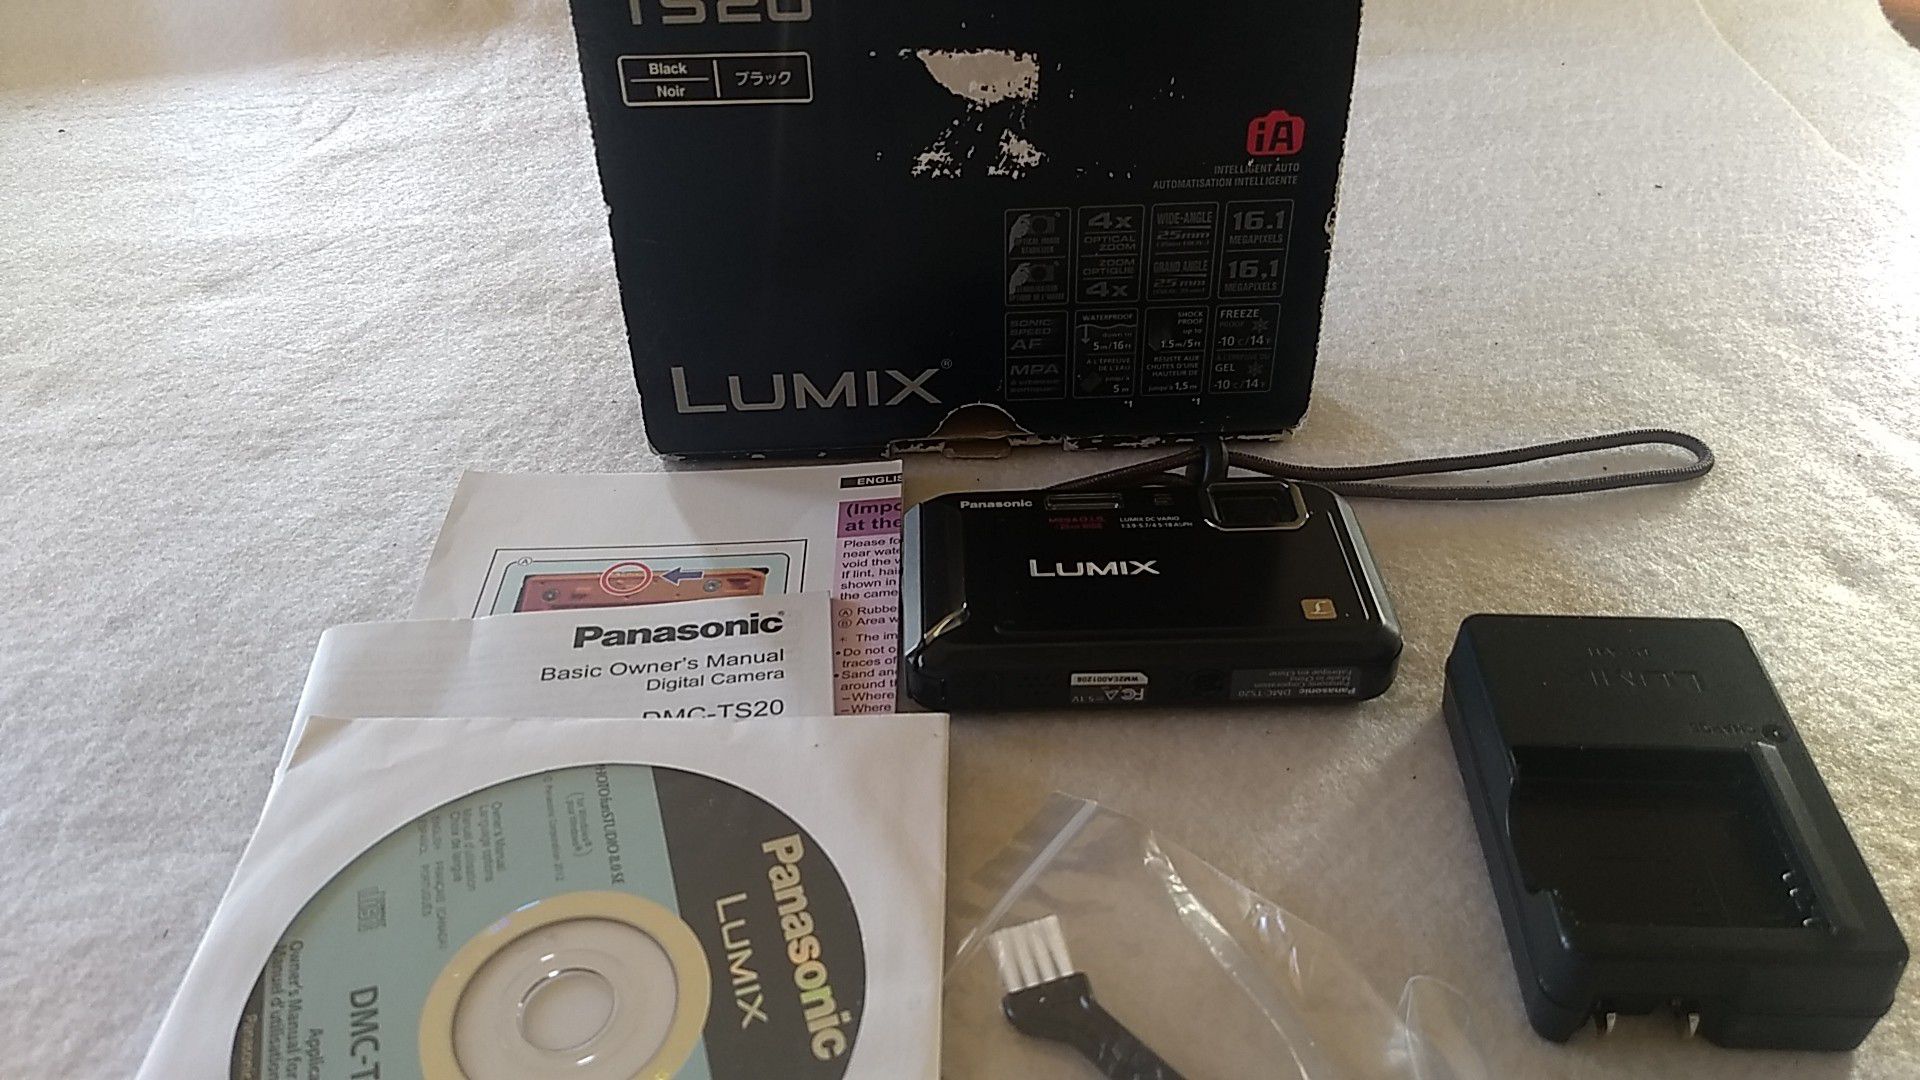 Panasonic Lumix TS20 waterproof camera 16MP